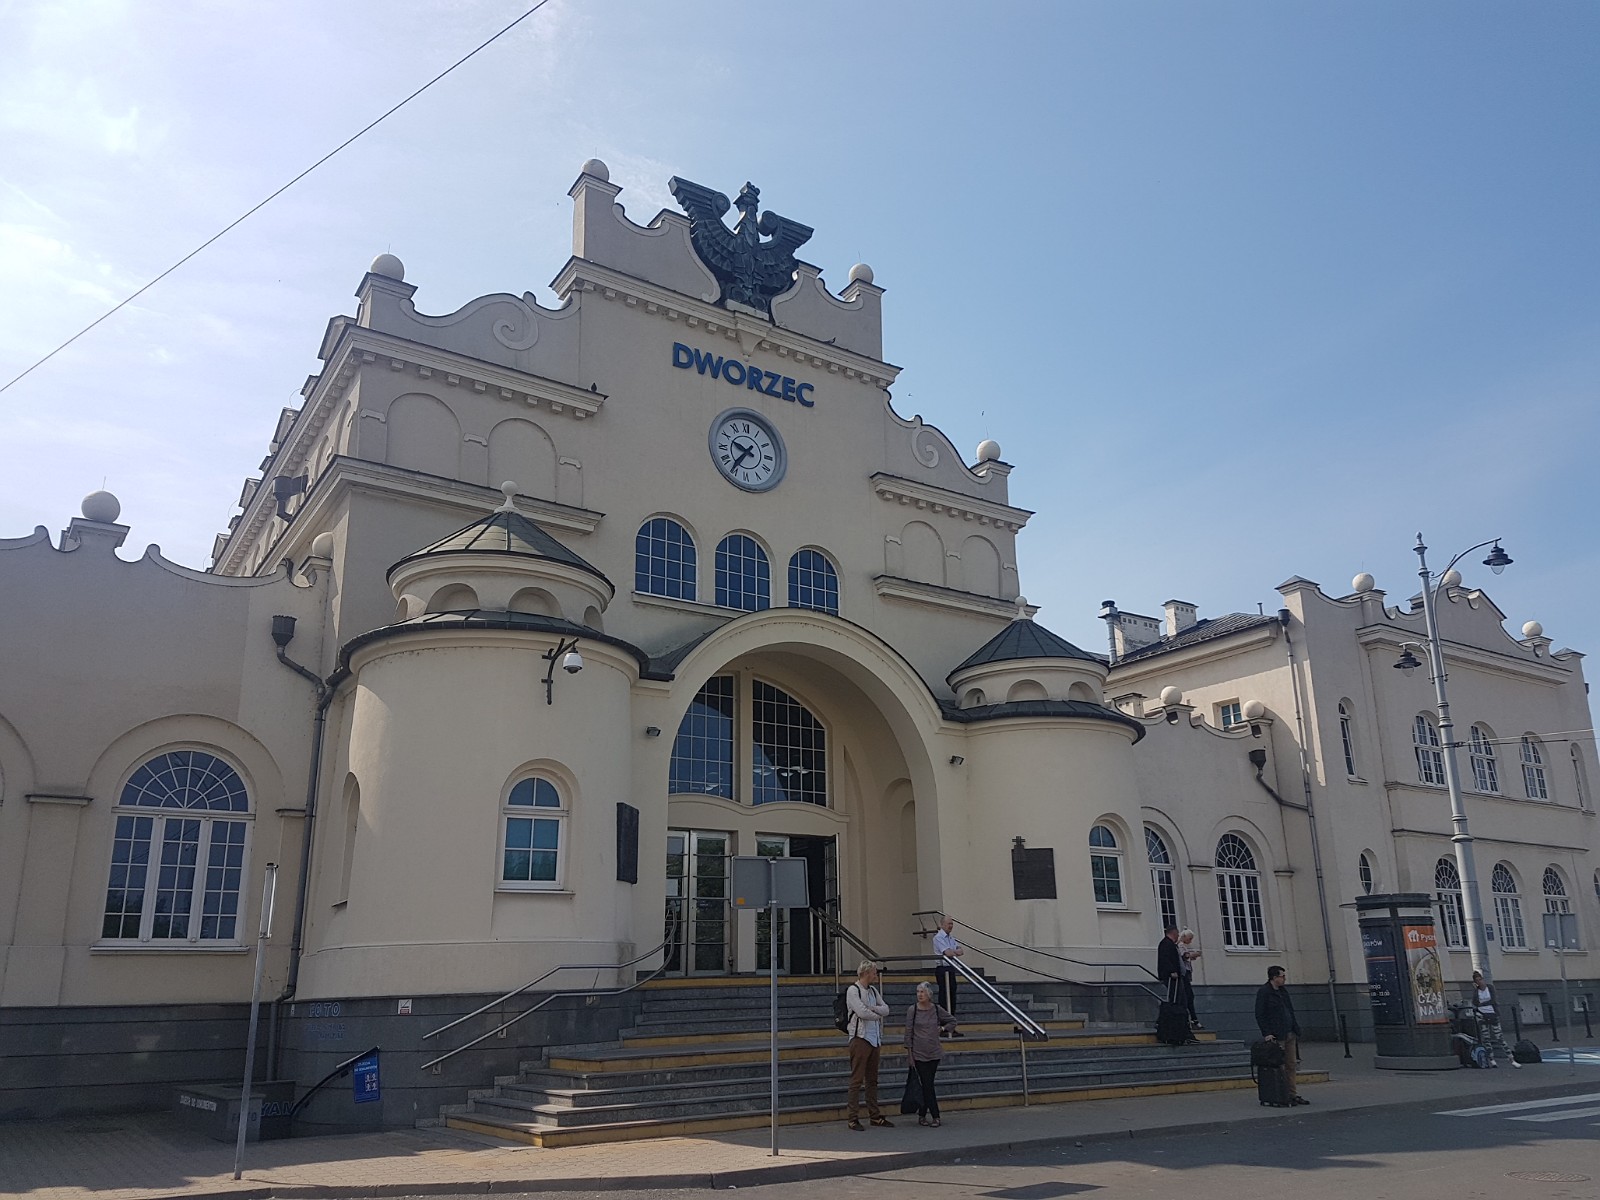 9. Dworzec kolejowy w Lublinie.